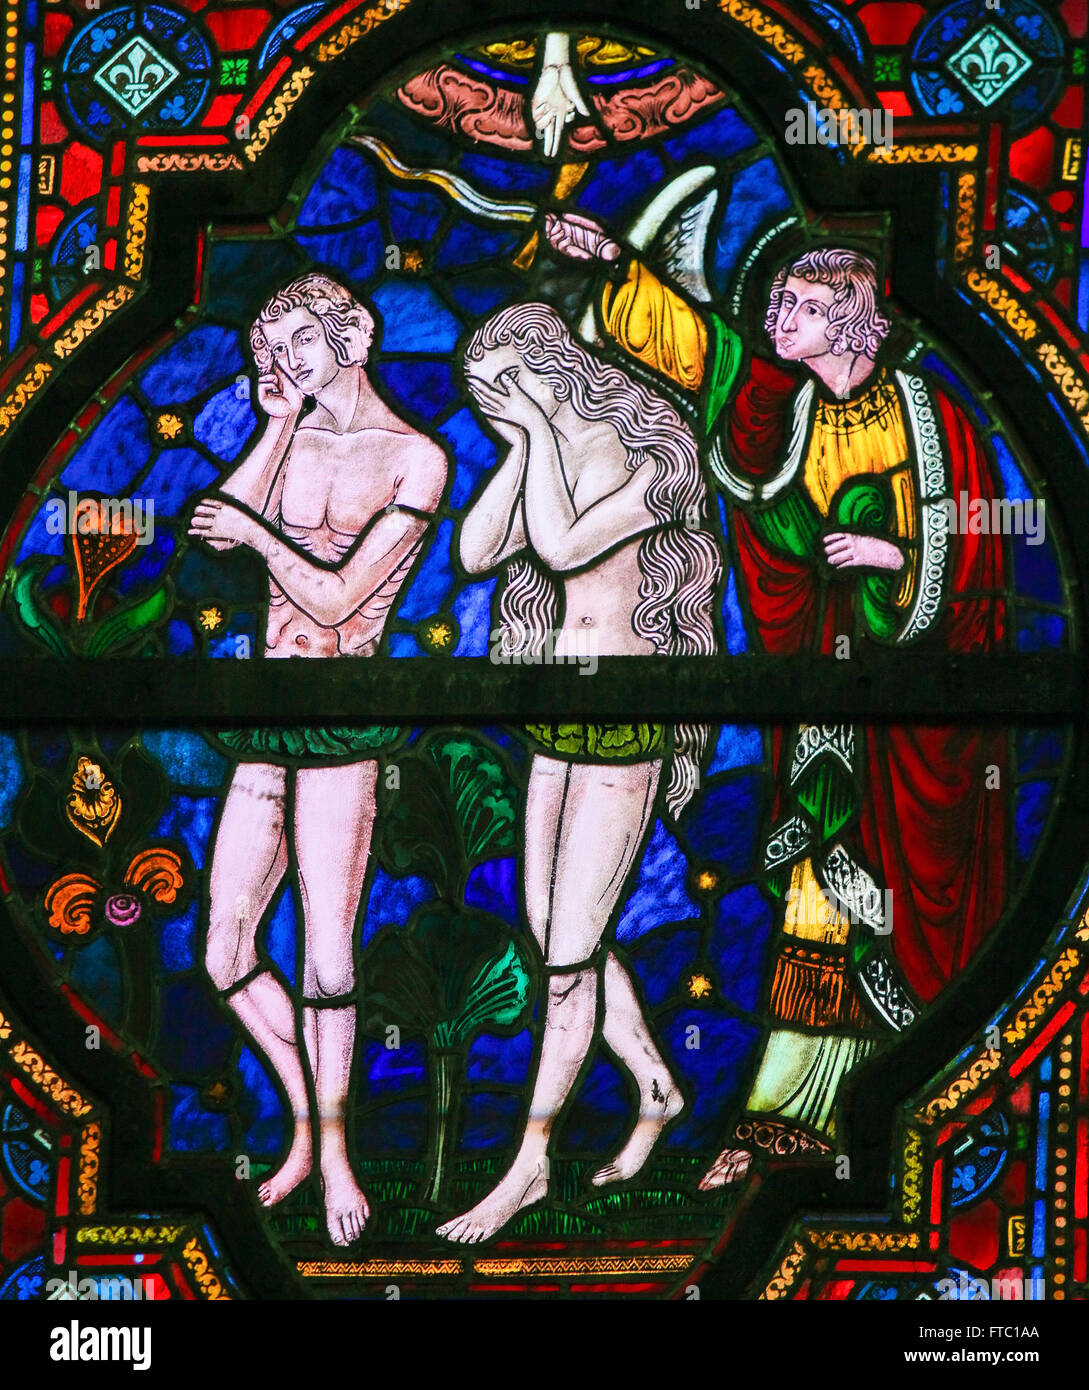 L'expulsion d'Adam et Eve du Paradis, vitrail dans l'église de Dinant, Belgique Banque D'Images